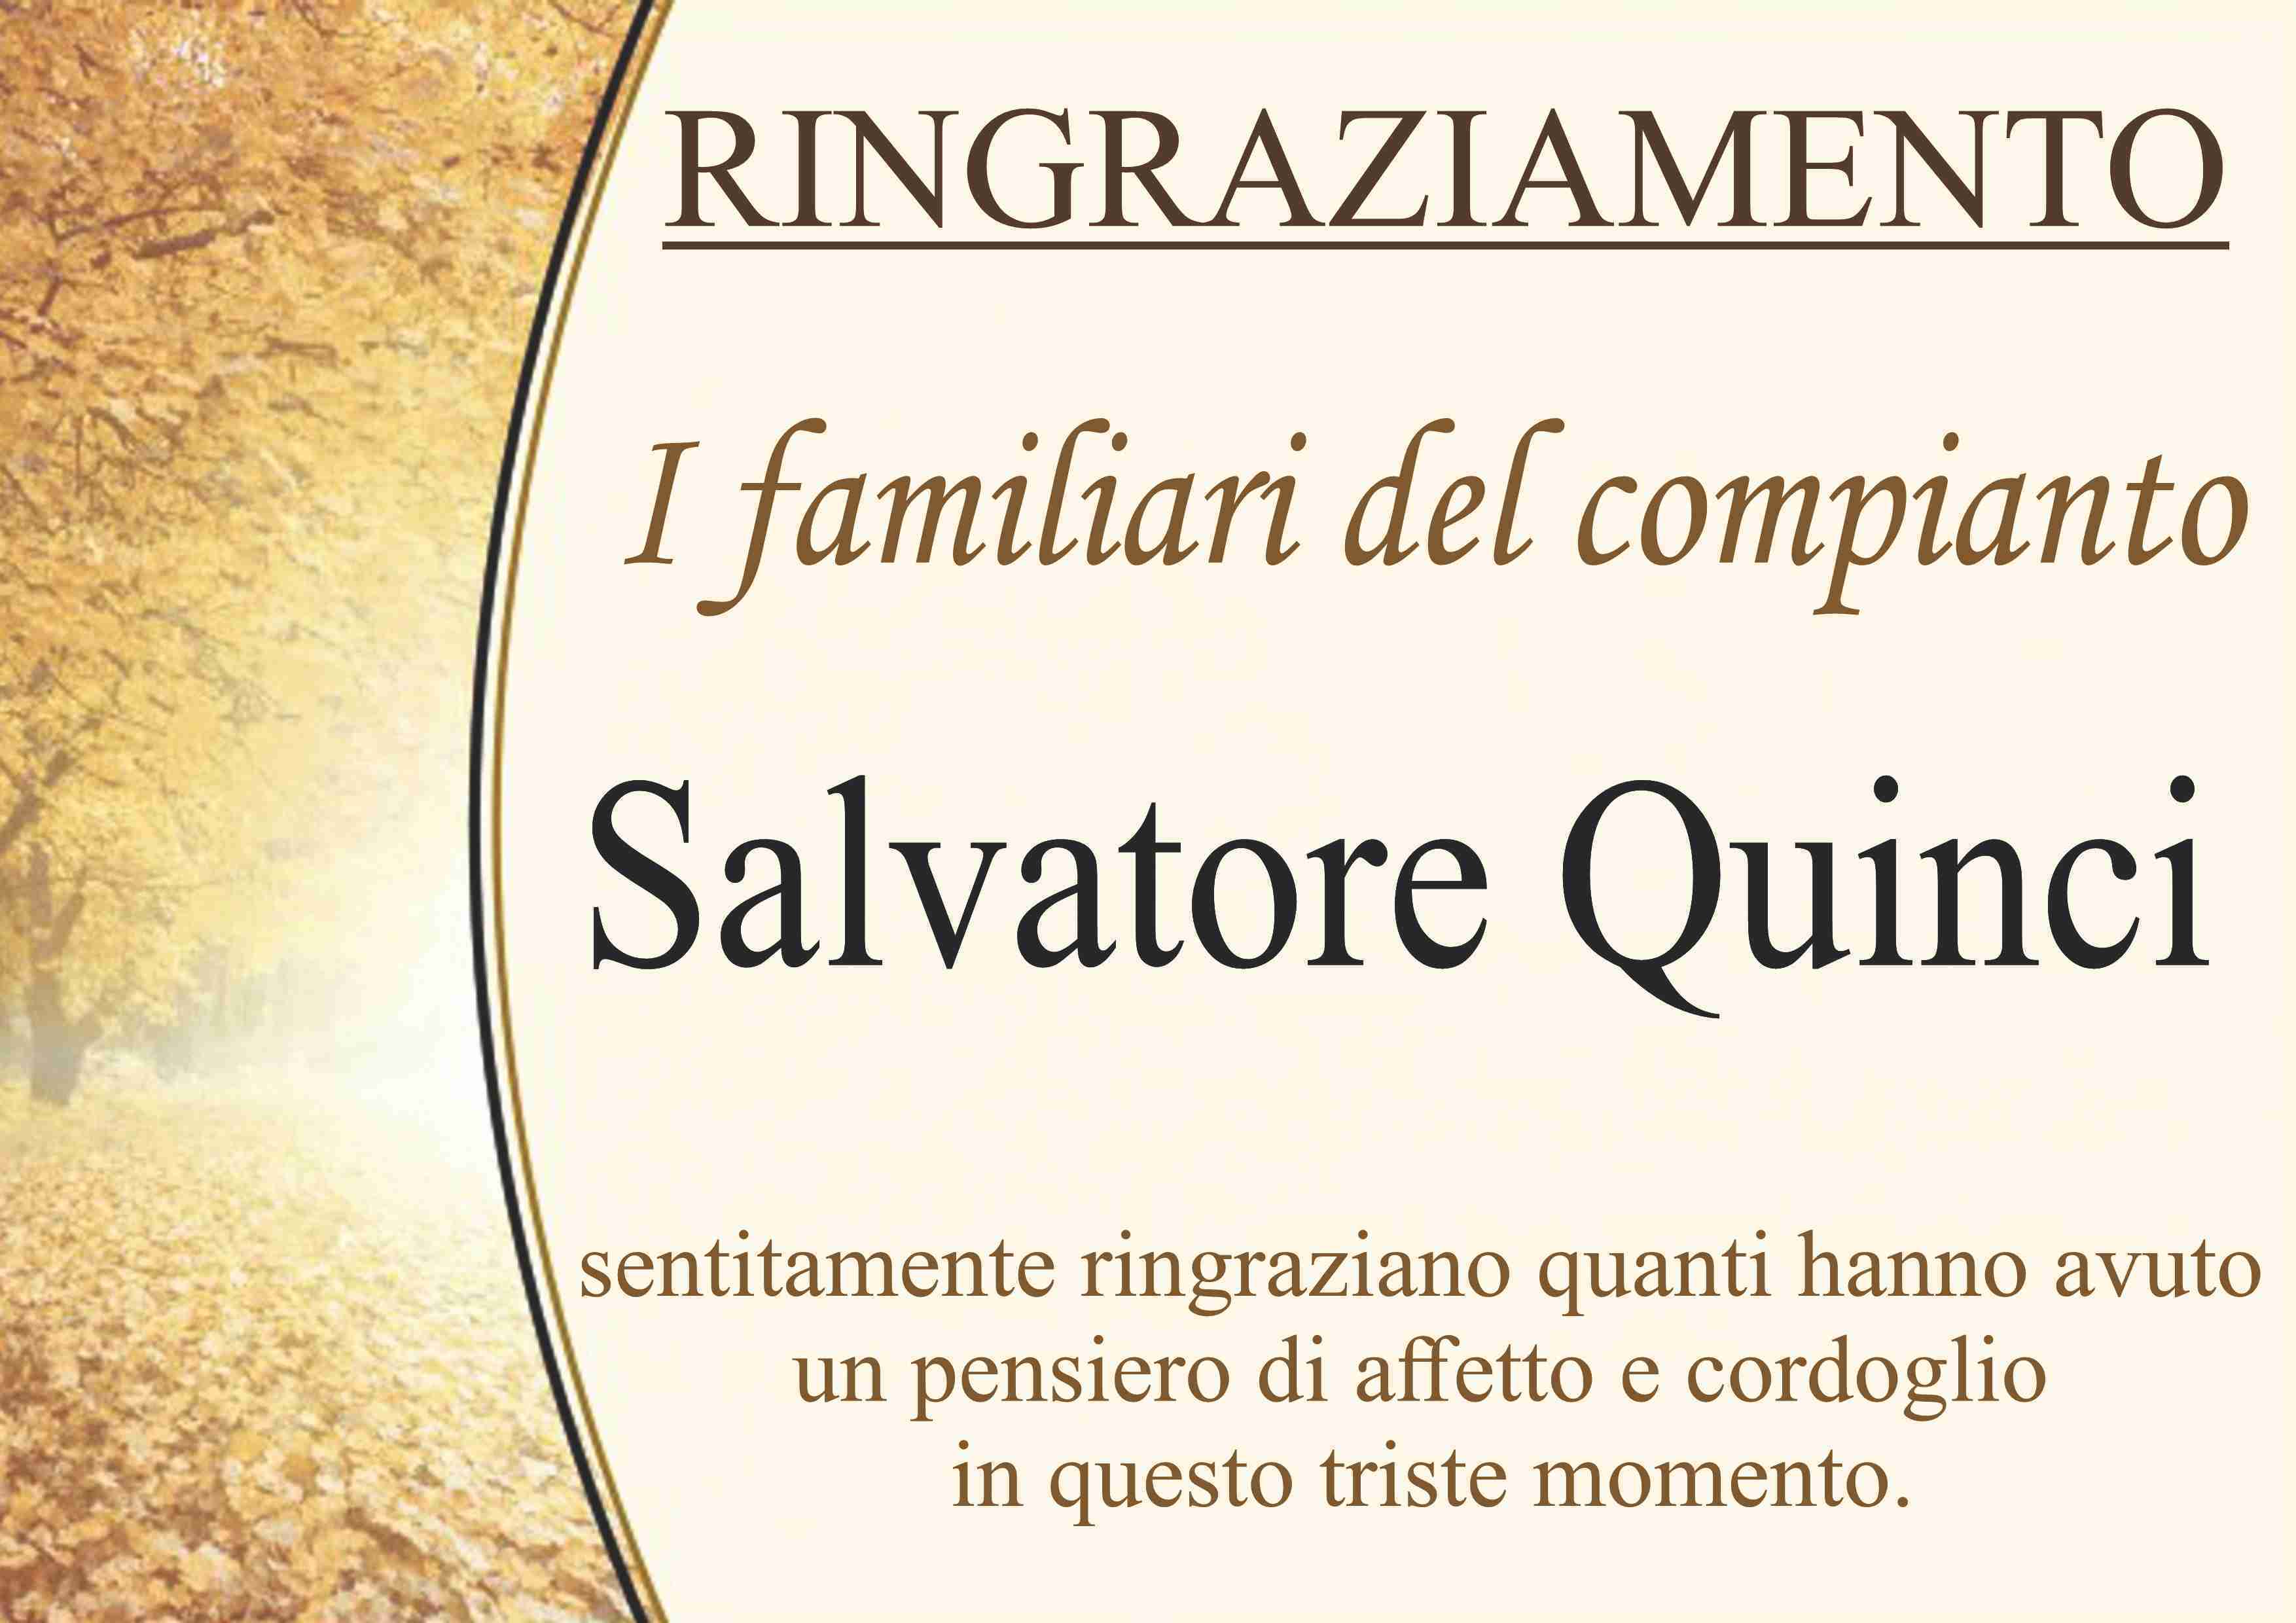 Salvatore Quinci